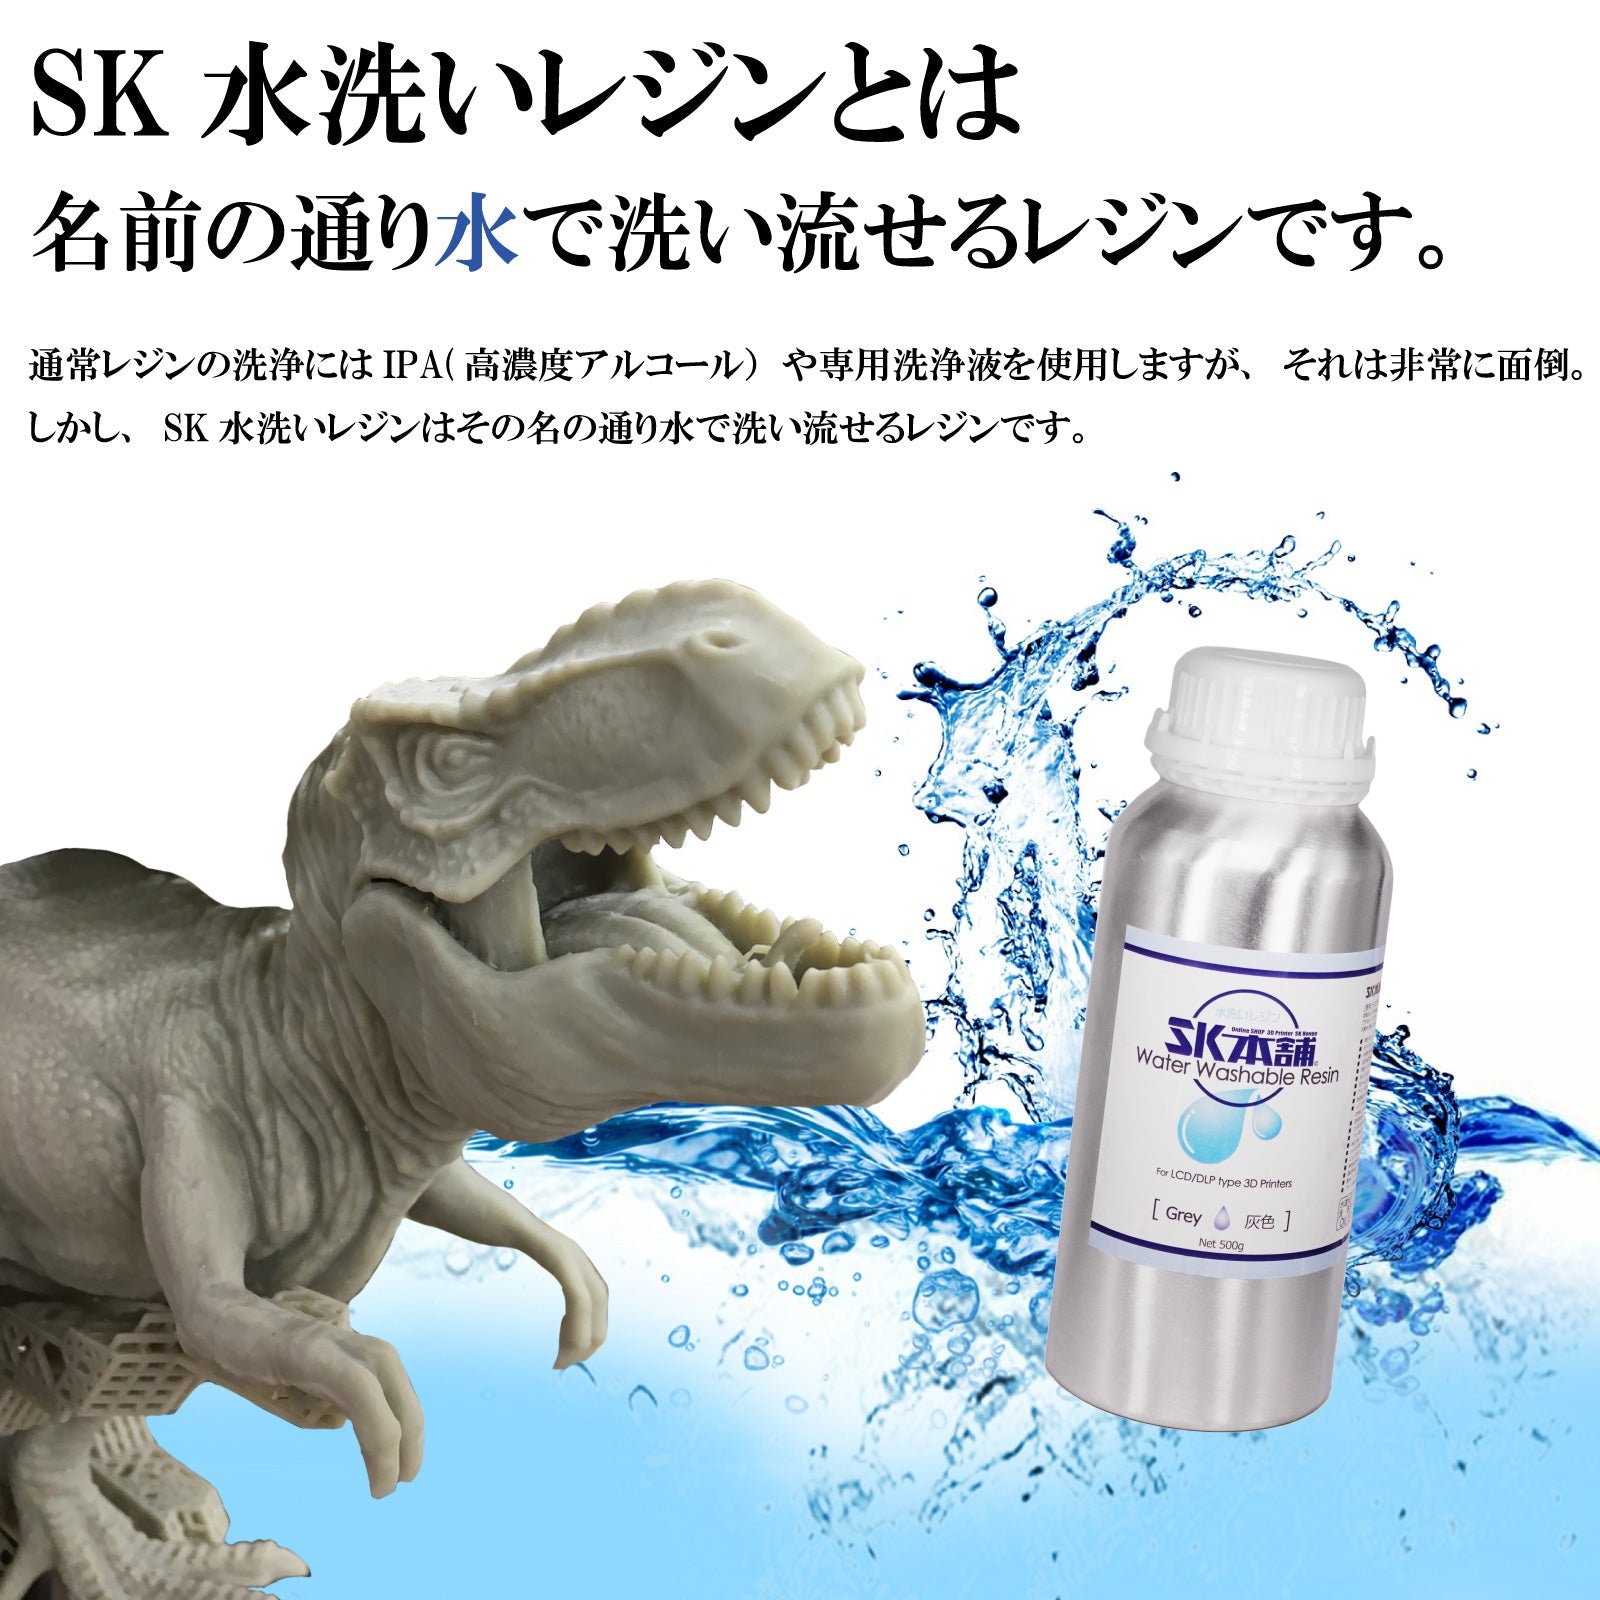 SK水洗いレジン 1000g [8K対応] – 3Dプリンターとレジン 